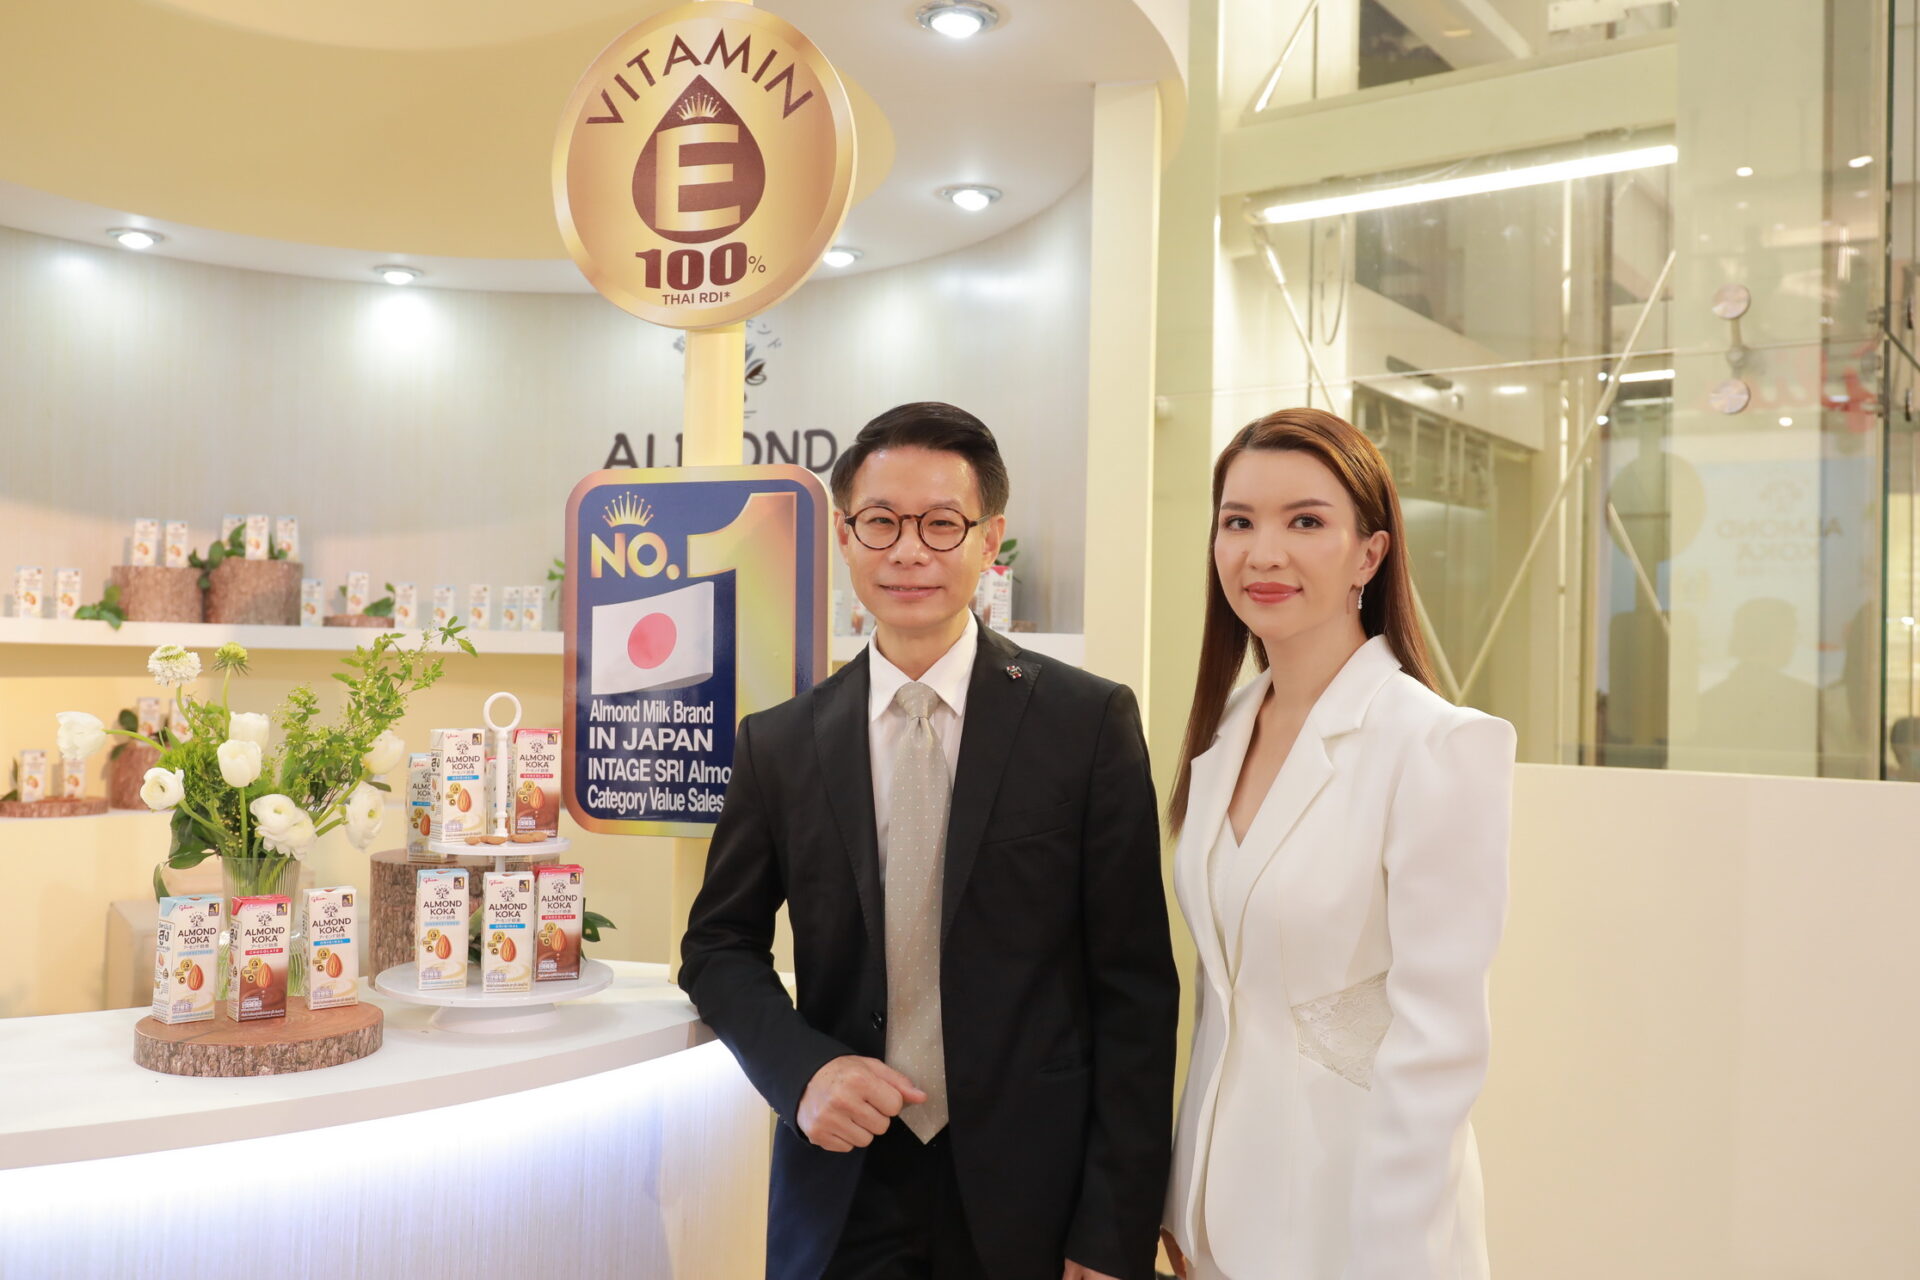 ไทยกูลิโกะ เปิดตัวนมอัลมอนด์ “Almond Koka”  รุกตลาดเครื่องดื่มสุขภาพในไทย